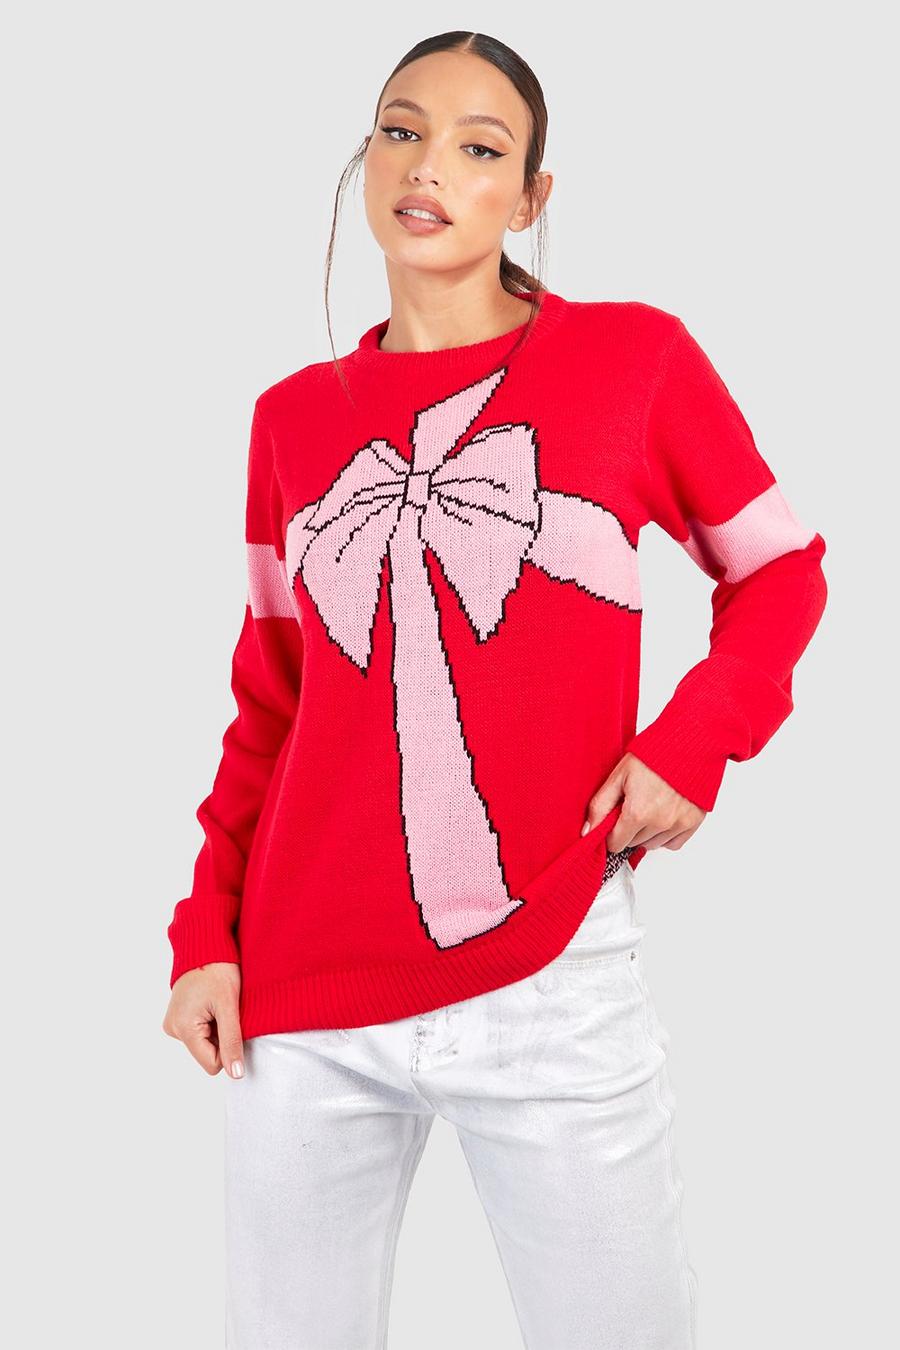 אדום סוודר עם סרט לחג המולד, לנשים גבוהות